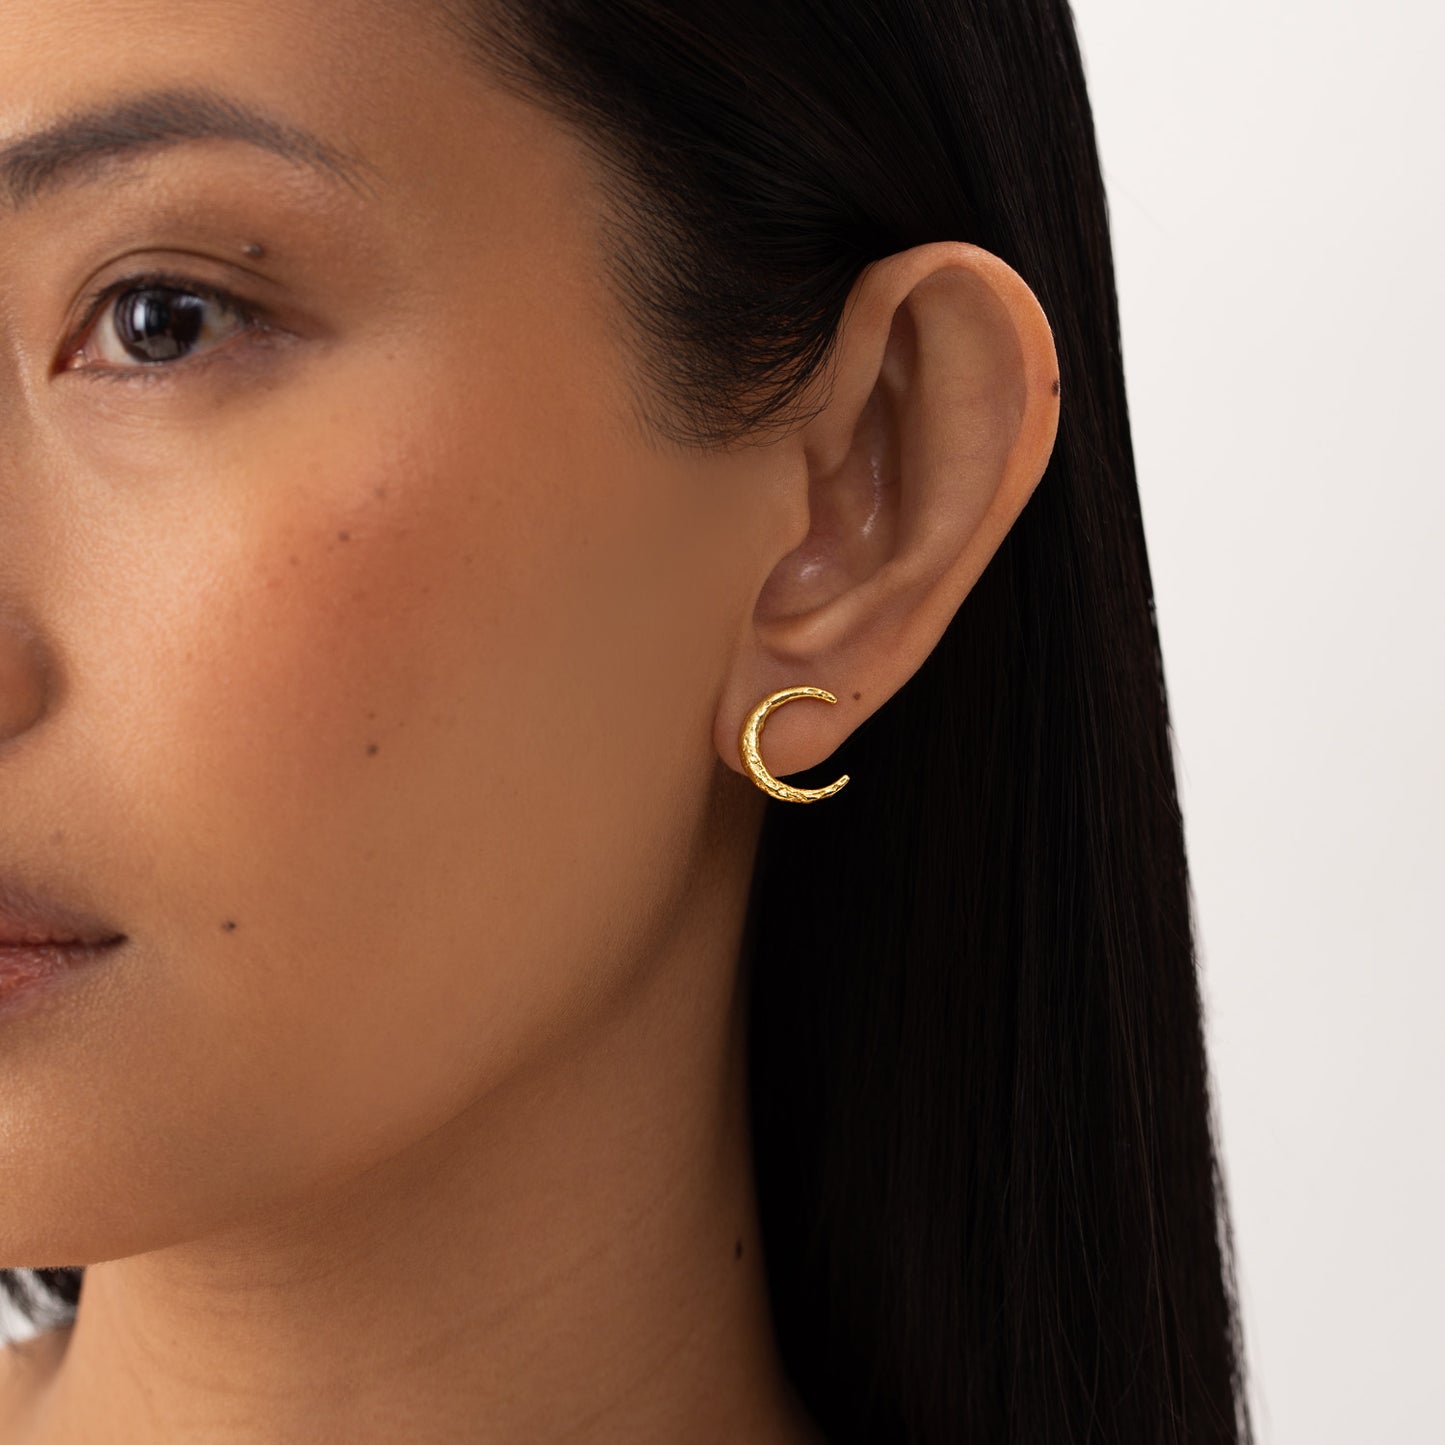 Luna golden stud earrings